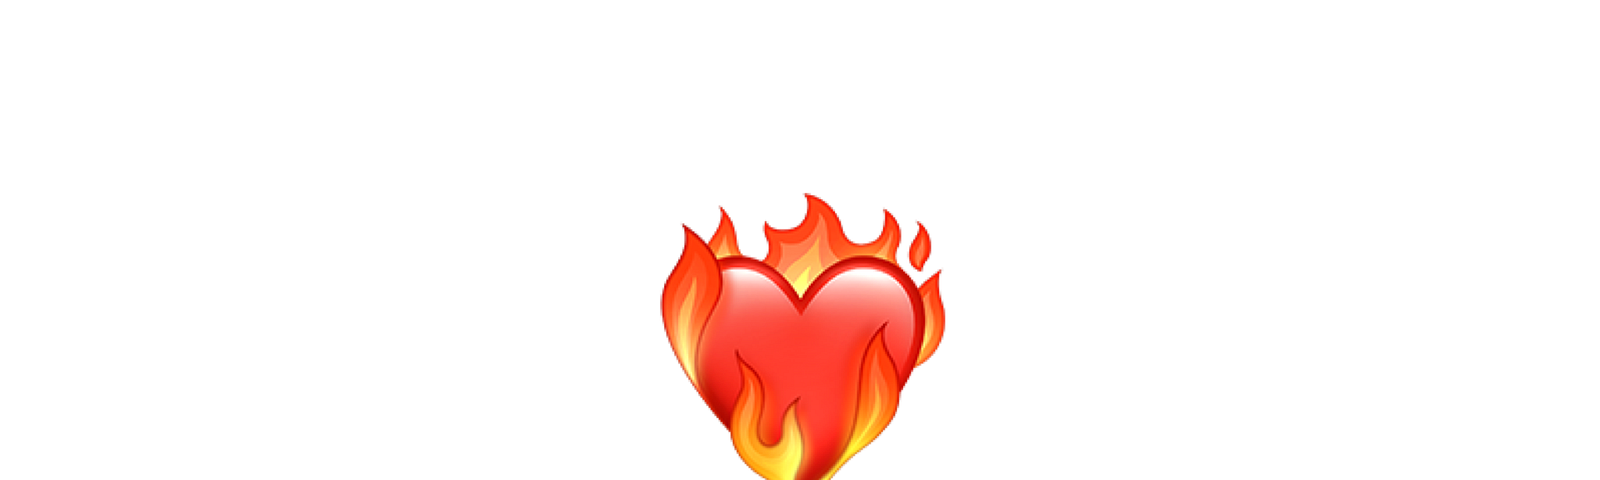 Emoji of a heart on fire